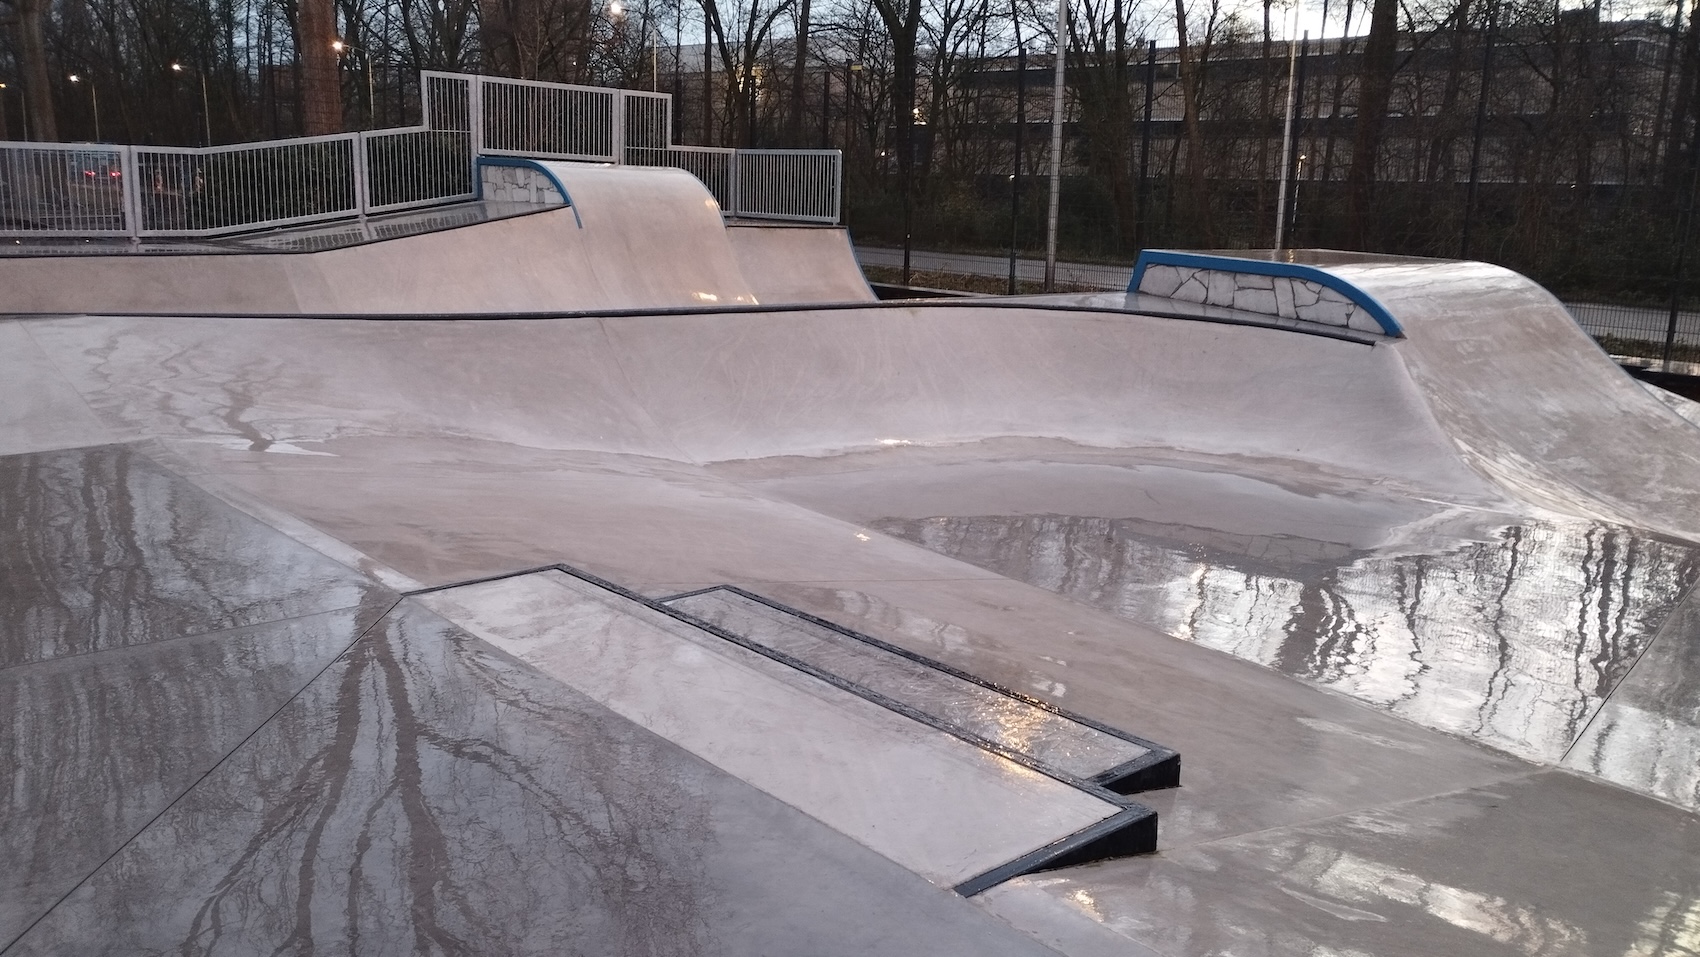 Middenberm skatepark